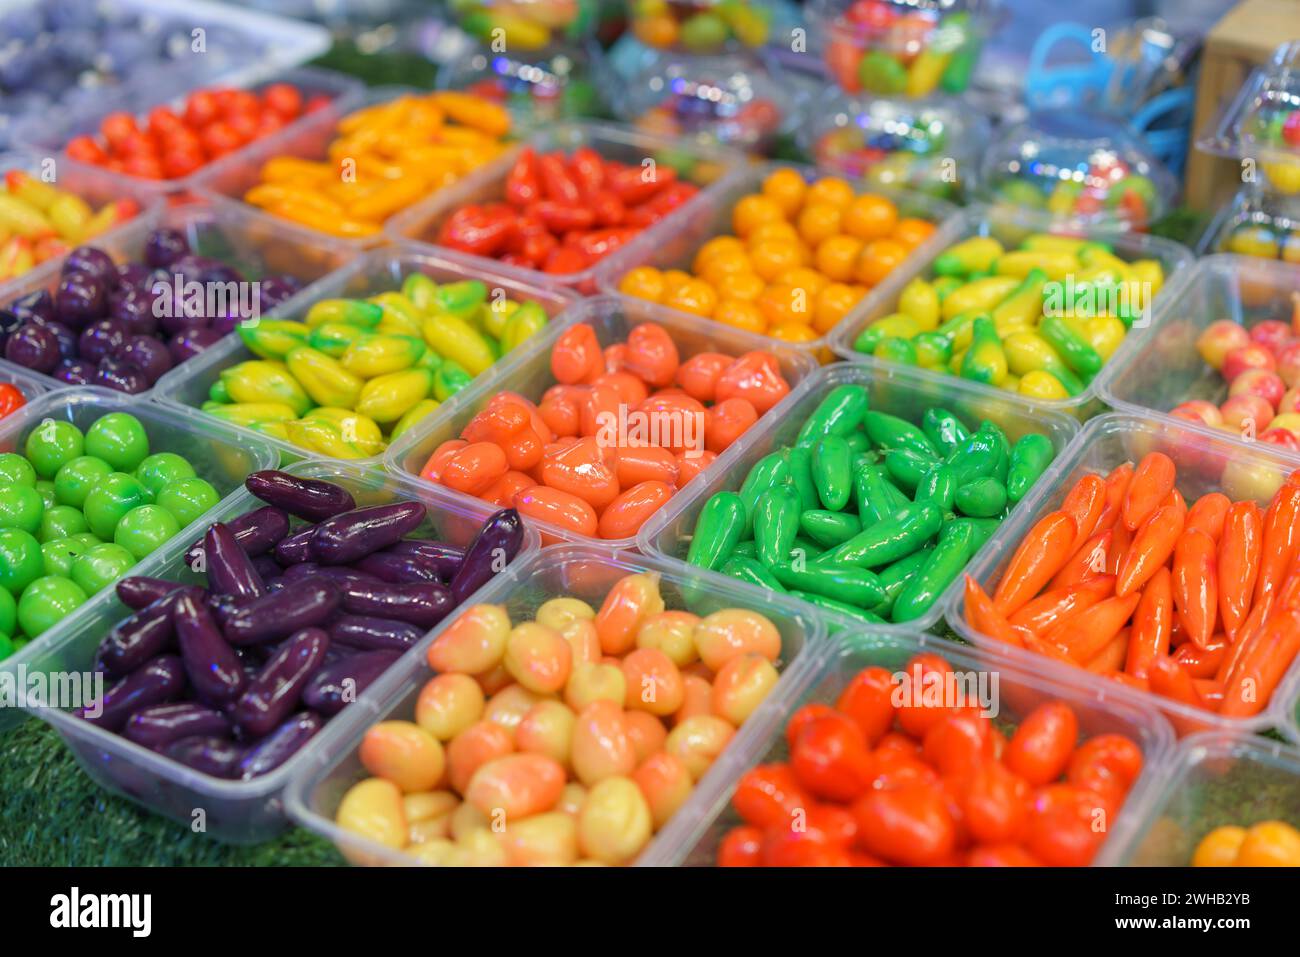 Un assortiment de haricots mung en forme de fruits, des desserts thaïlandais vibrants, conçus pour ressembler à des fruits et légumes miniatures, présentés dans des récipients transparents à Banque D'Images